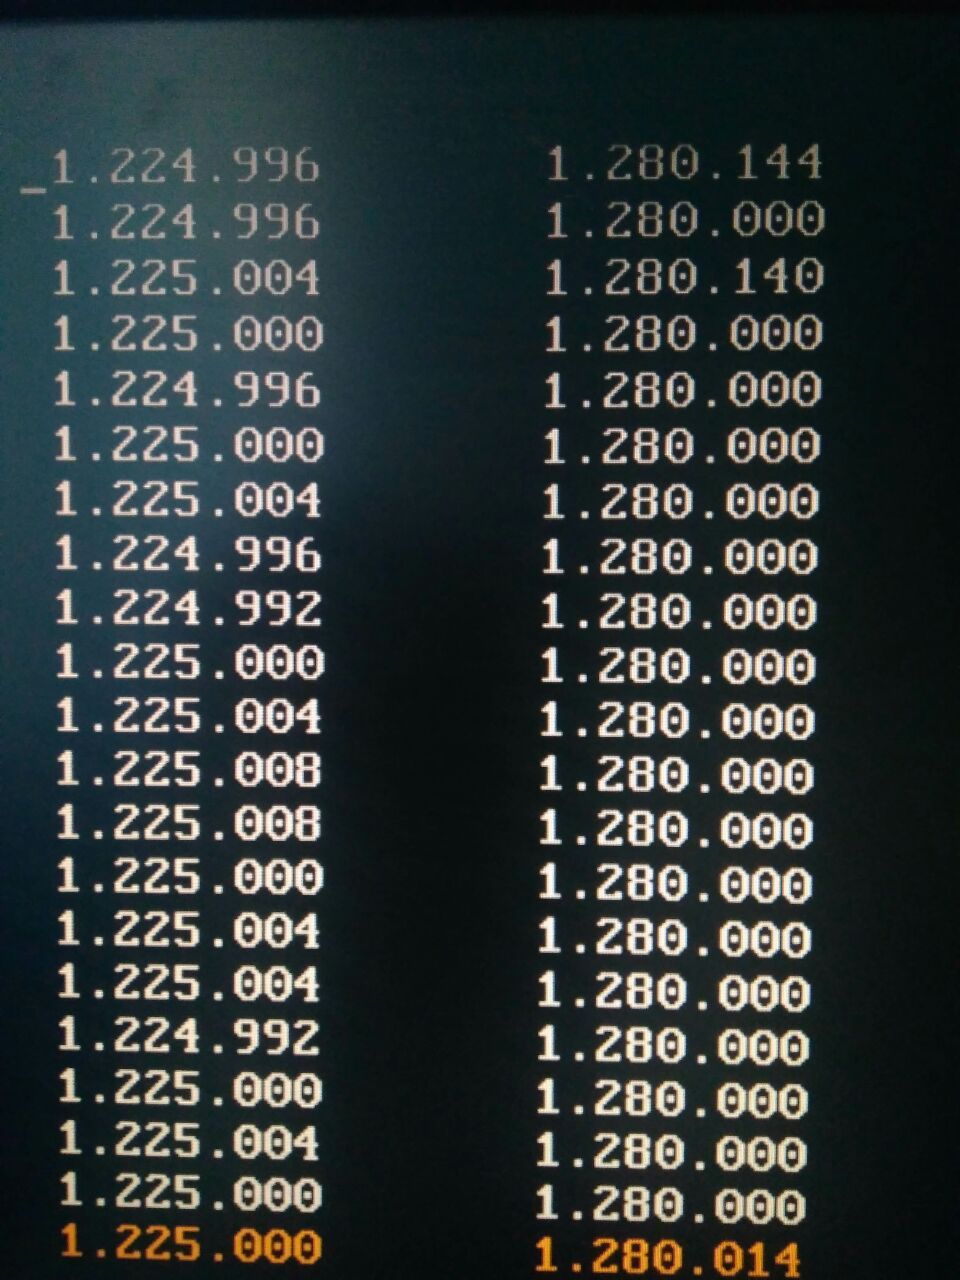 1.225.000 - среднее для XCHG (слева), 1.280.014 - среднее для XOR, XOR, XOR (справа)